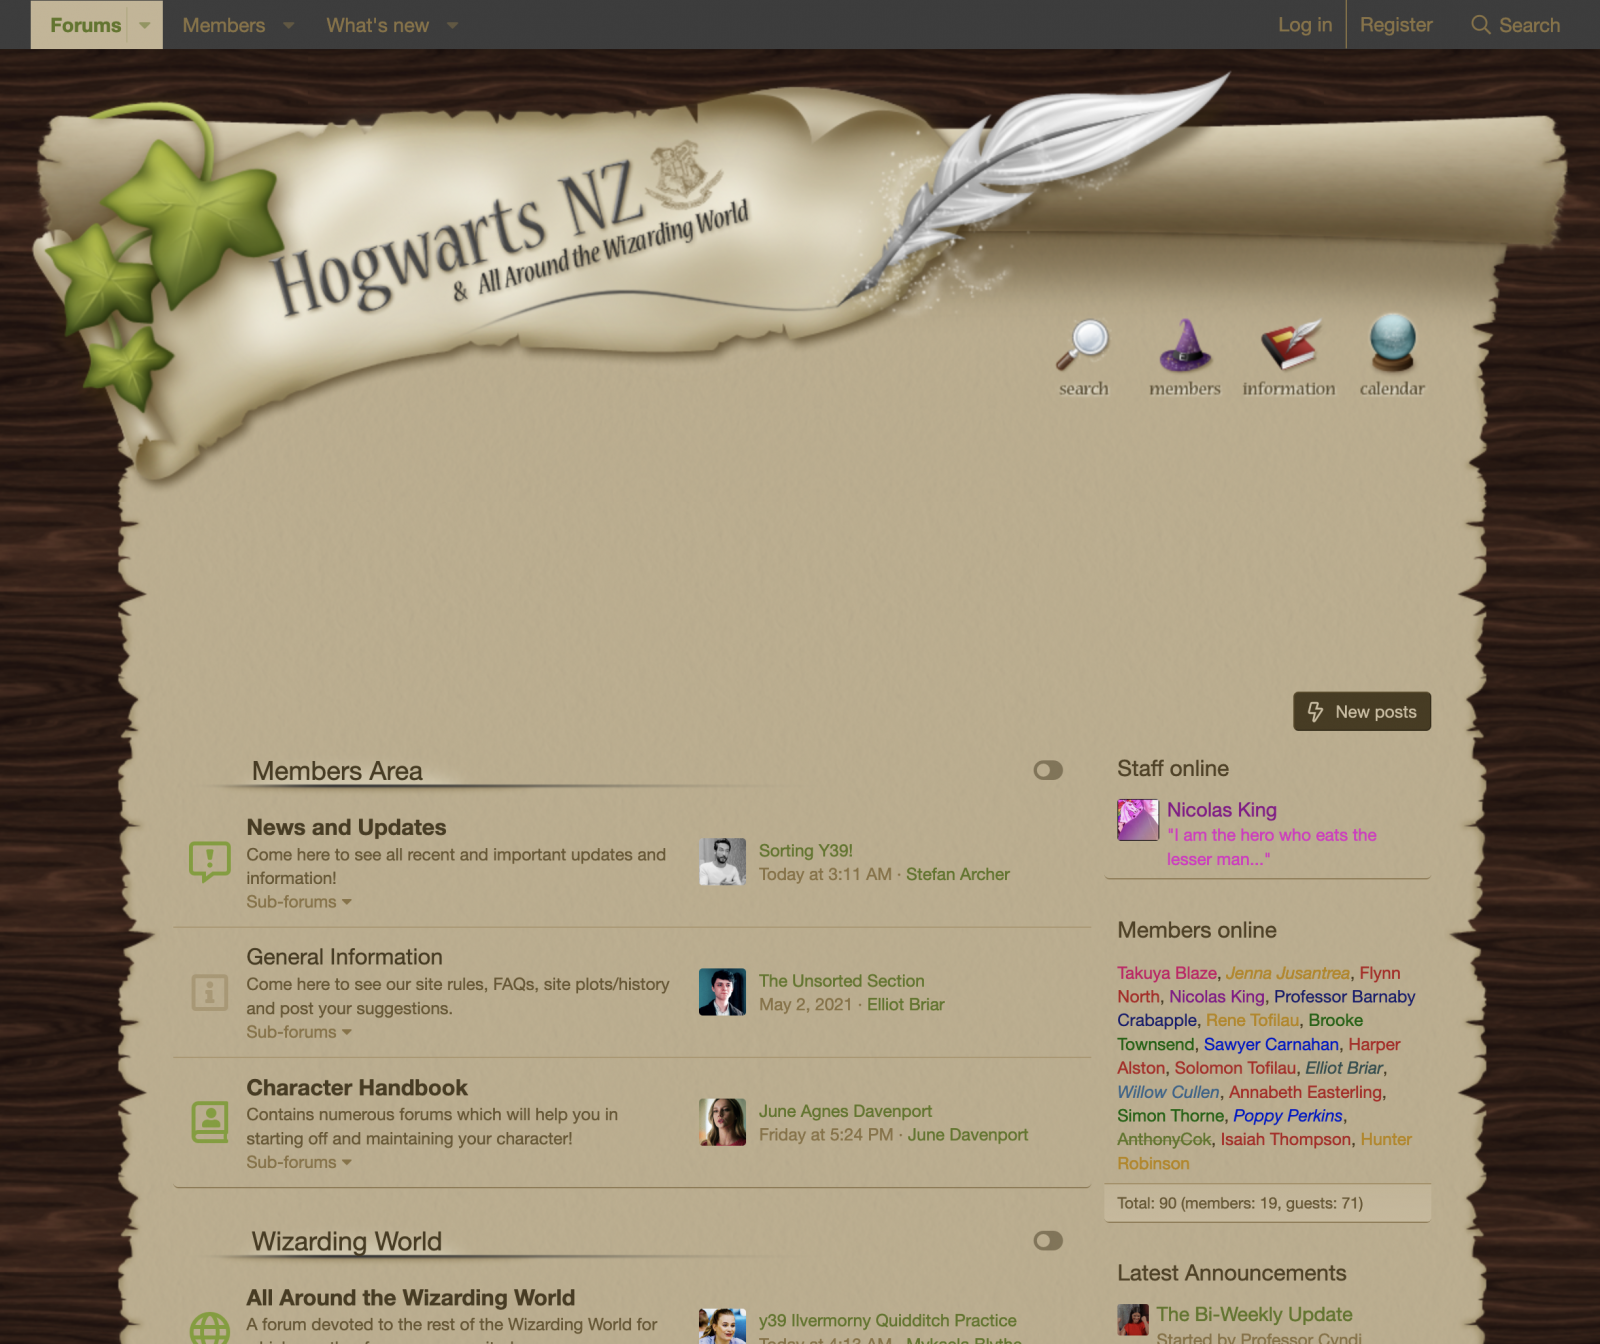 Screenshot showing http://hogwarts.nz